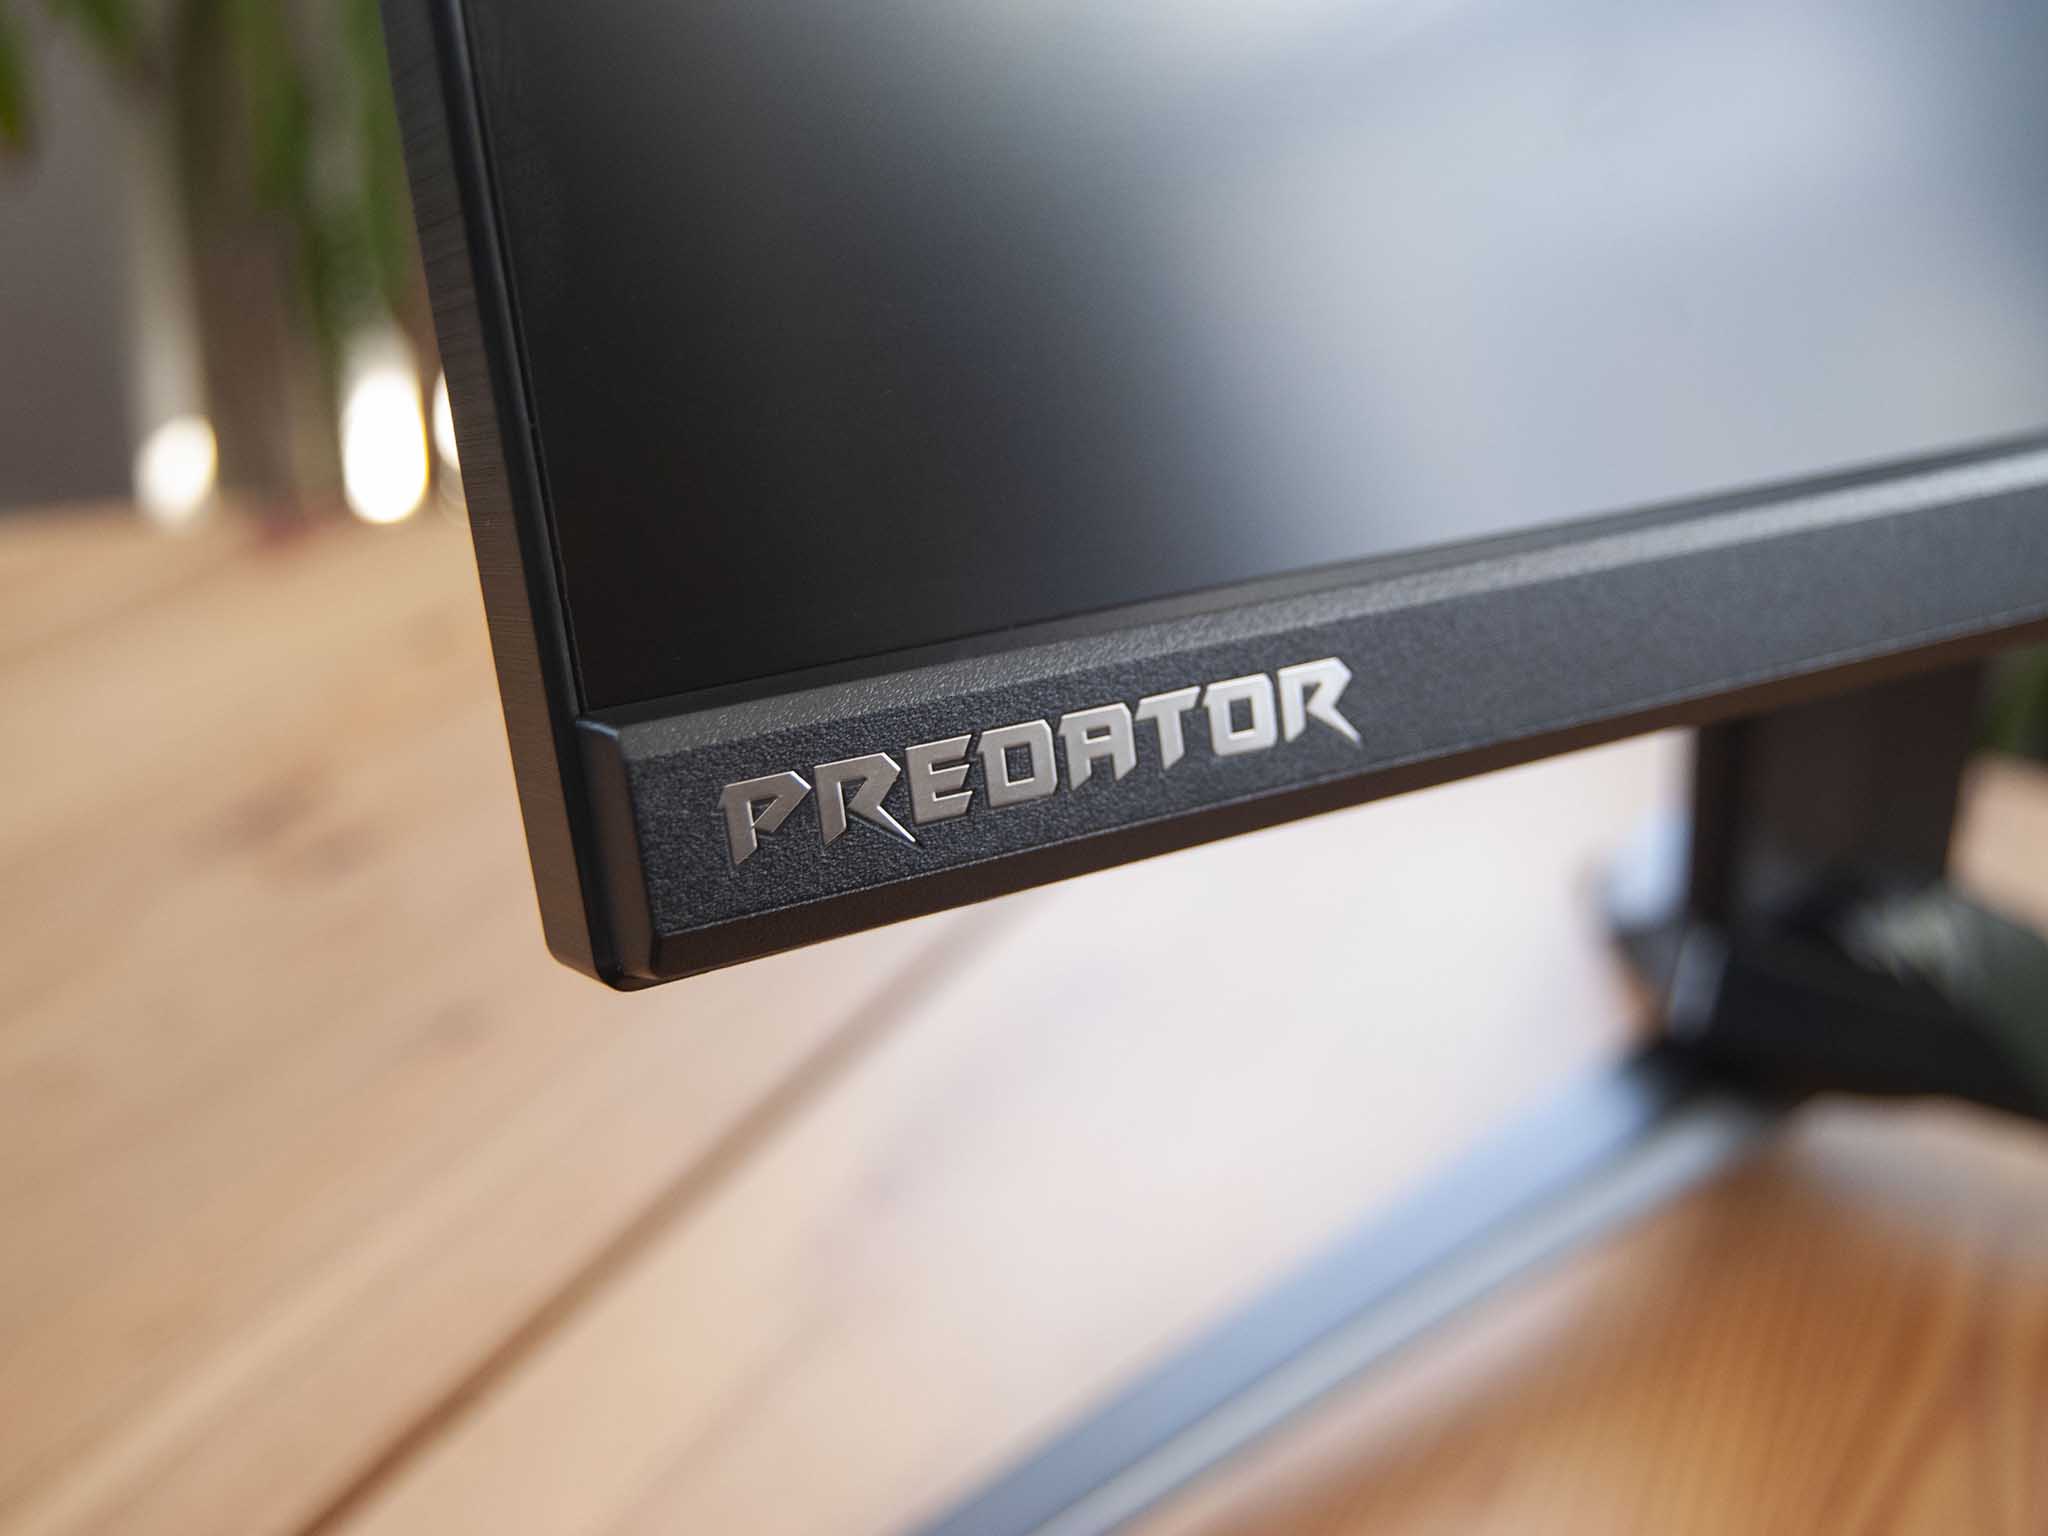 Acer Predator X28 Review